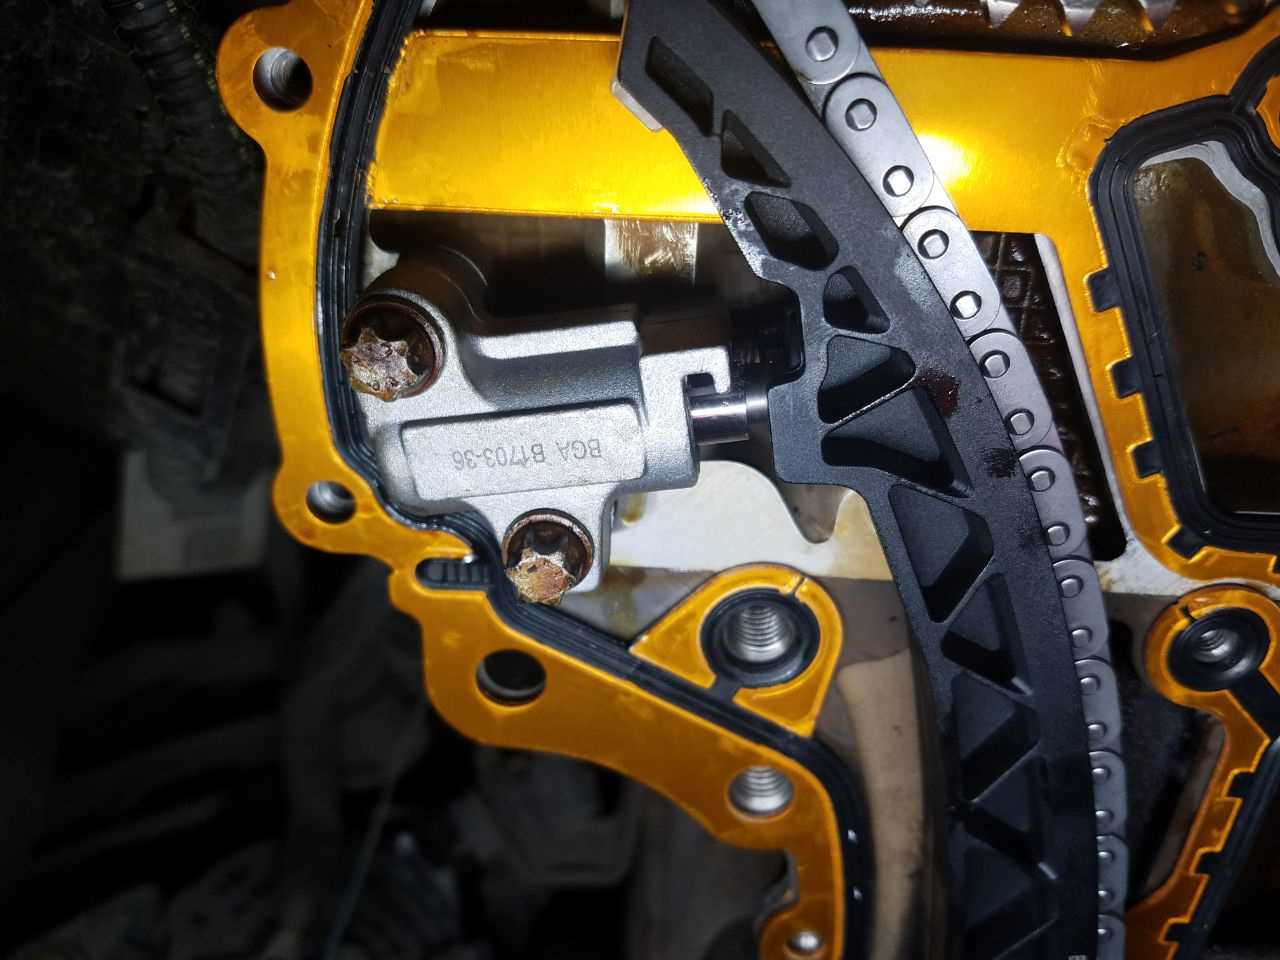 В данной статье мы подробно рассмотрим процедуру замены цепи ГРМ на Opel Corsa D, а также регулировку фаз газораспределения, двигатель у нас 1,2 литра Z12XEP, но